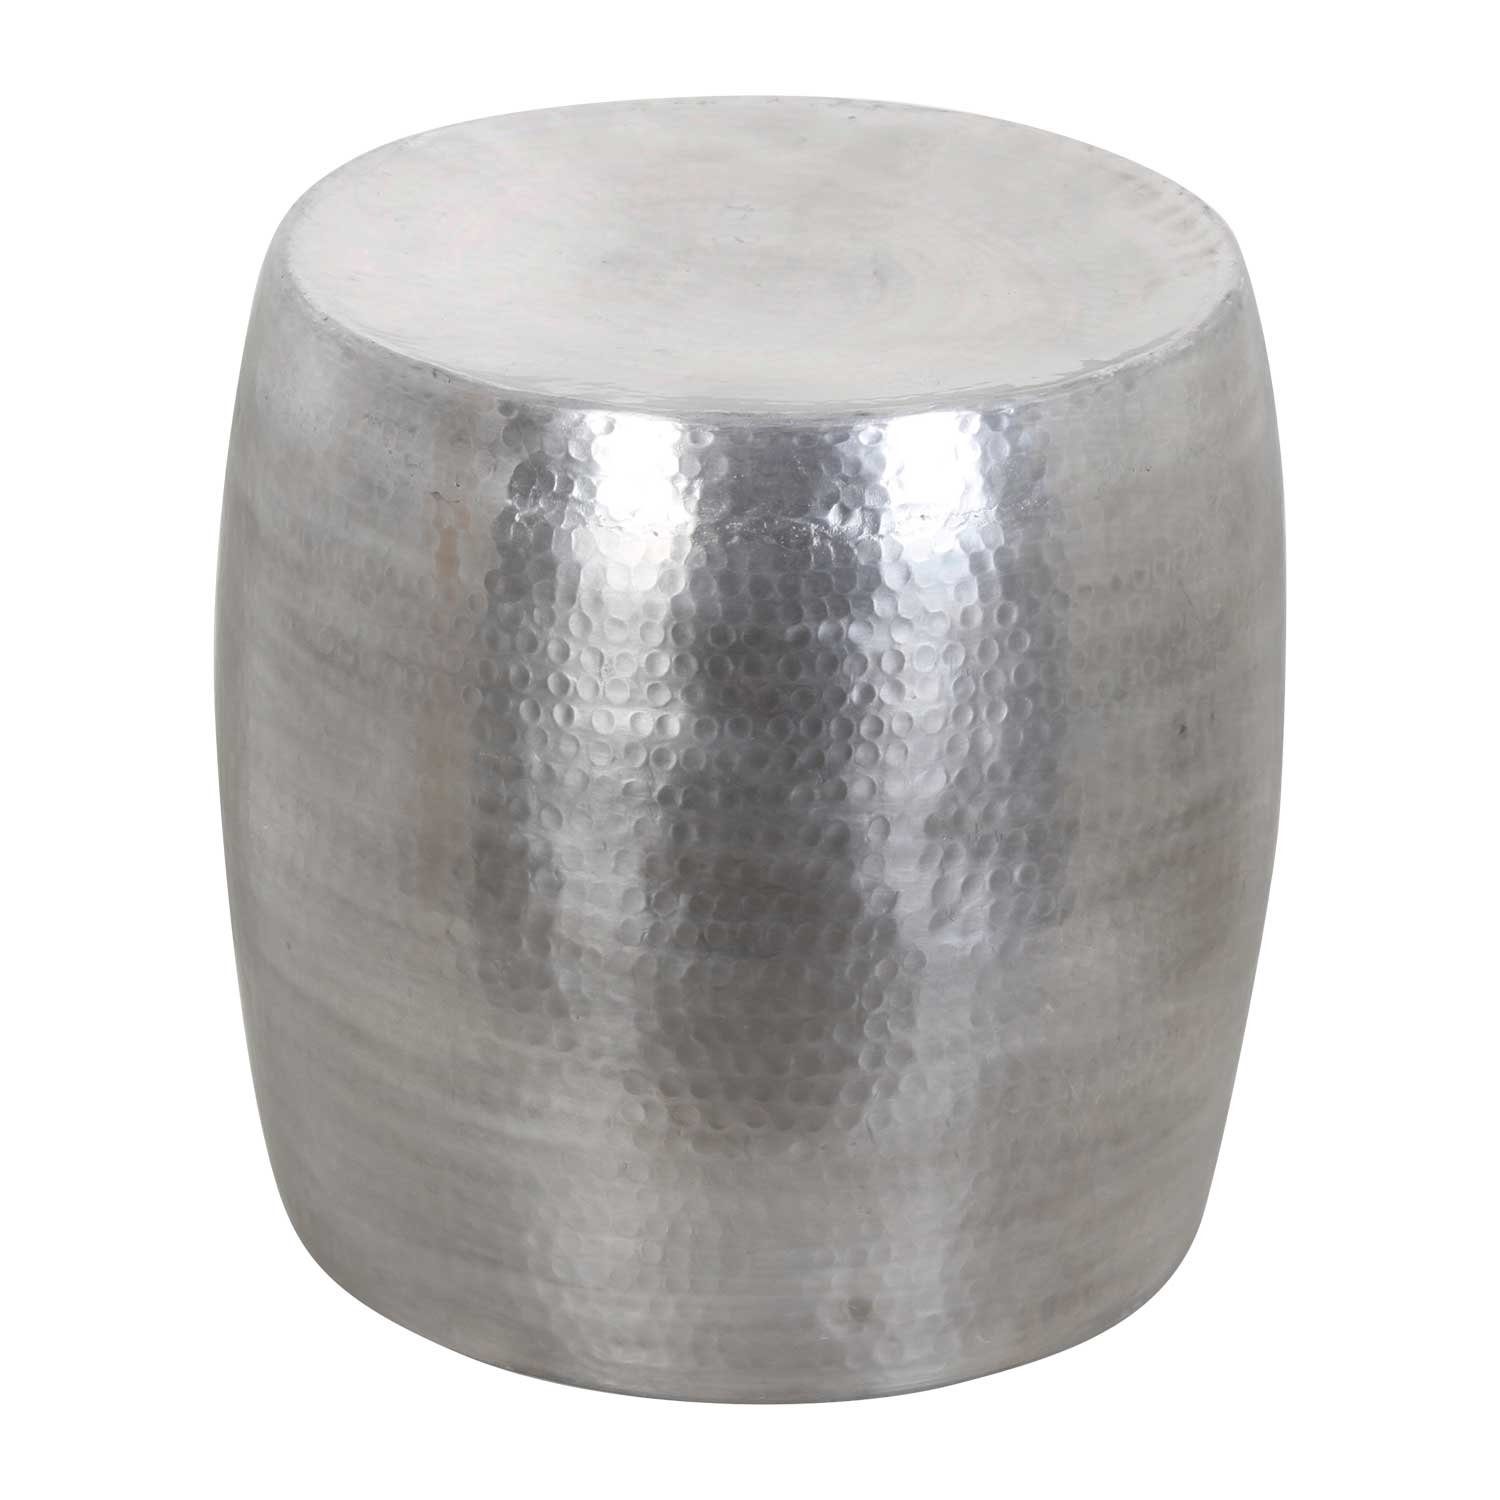 Casa Sofatisch Silber Art mit Tisch, 38cm Hammerschlag Beistelltisch Kinza Ø Couchtisch Kunsthandwerk rund, Deko Aluminium Beistelltisch aus Moro Optik gehämmert,